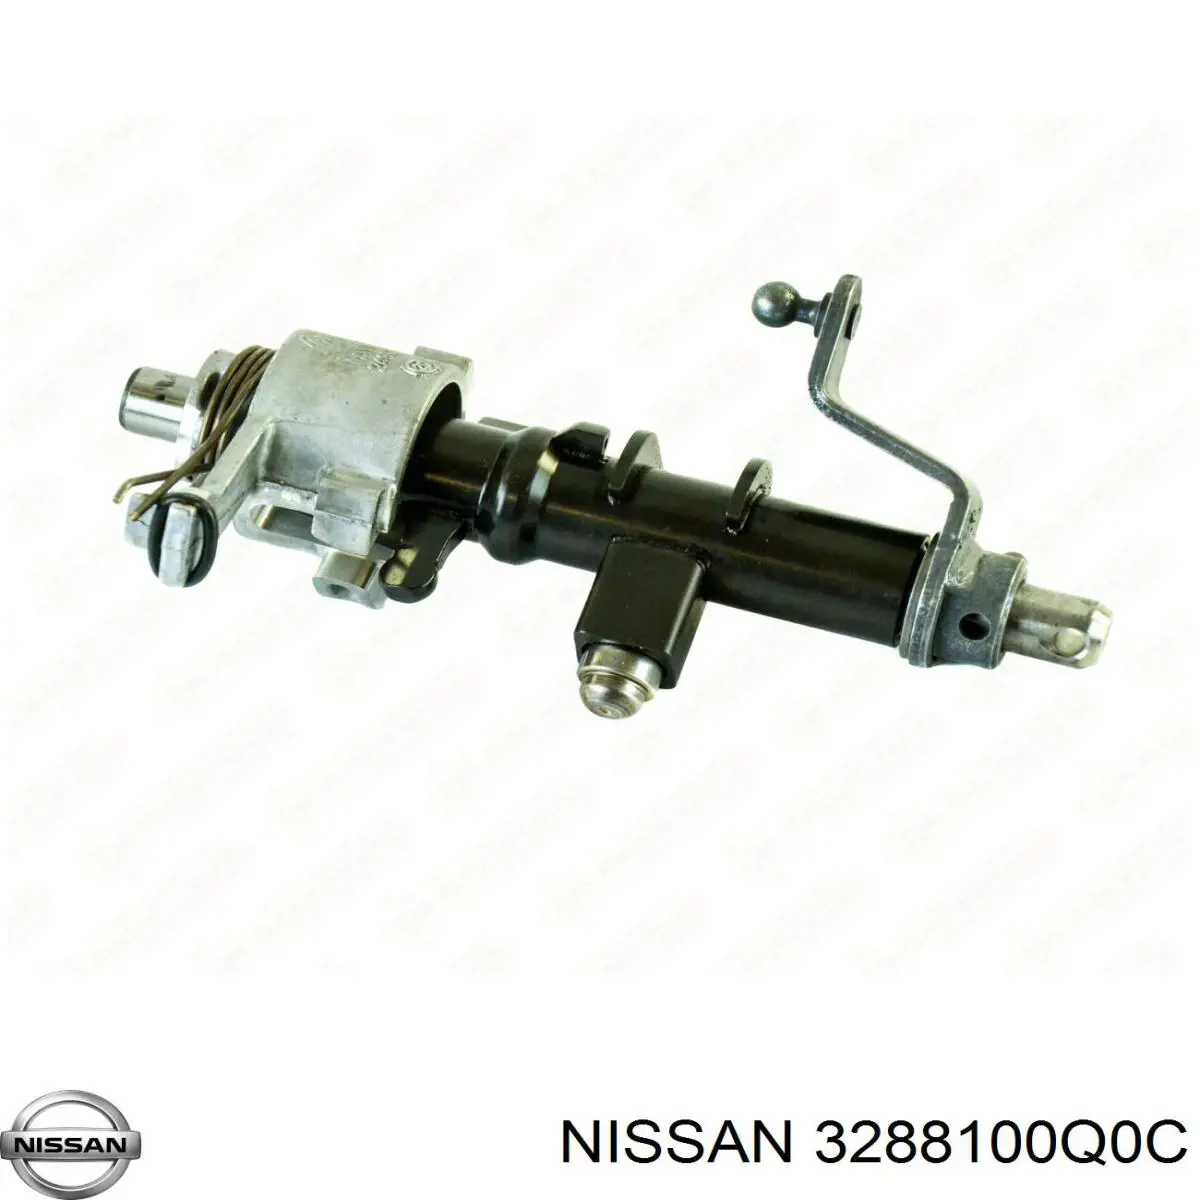 3288100Q0C Nissan mecanismo de selección de marcha (cambio)